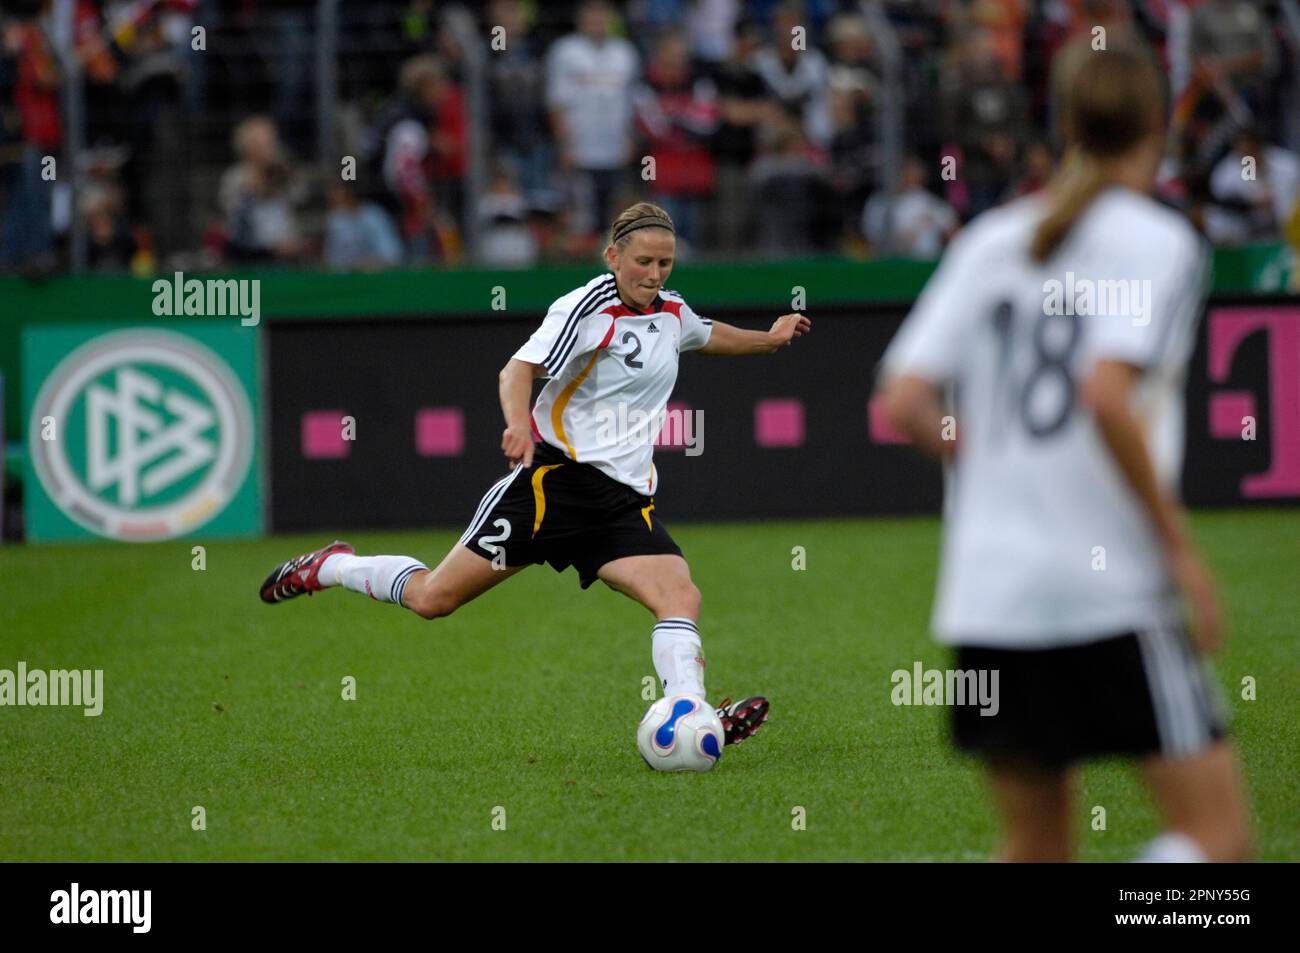 Kerstin Stegemann Aktion, Fußball EM Qualificationsspiel Deutschland - Schweiz 7:0, 22.8.2007 in Koblenz, Fußball Frauen Nationalmannschaft Banque D'Images